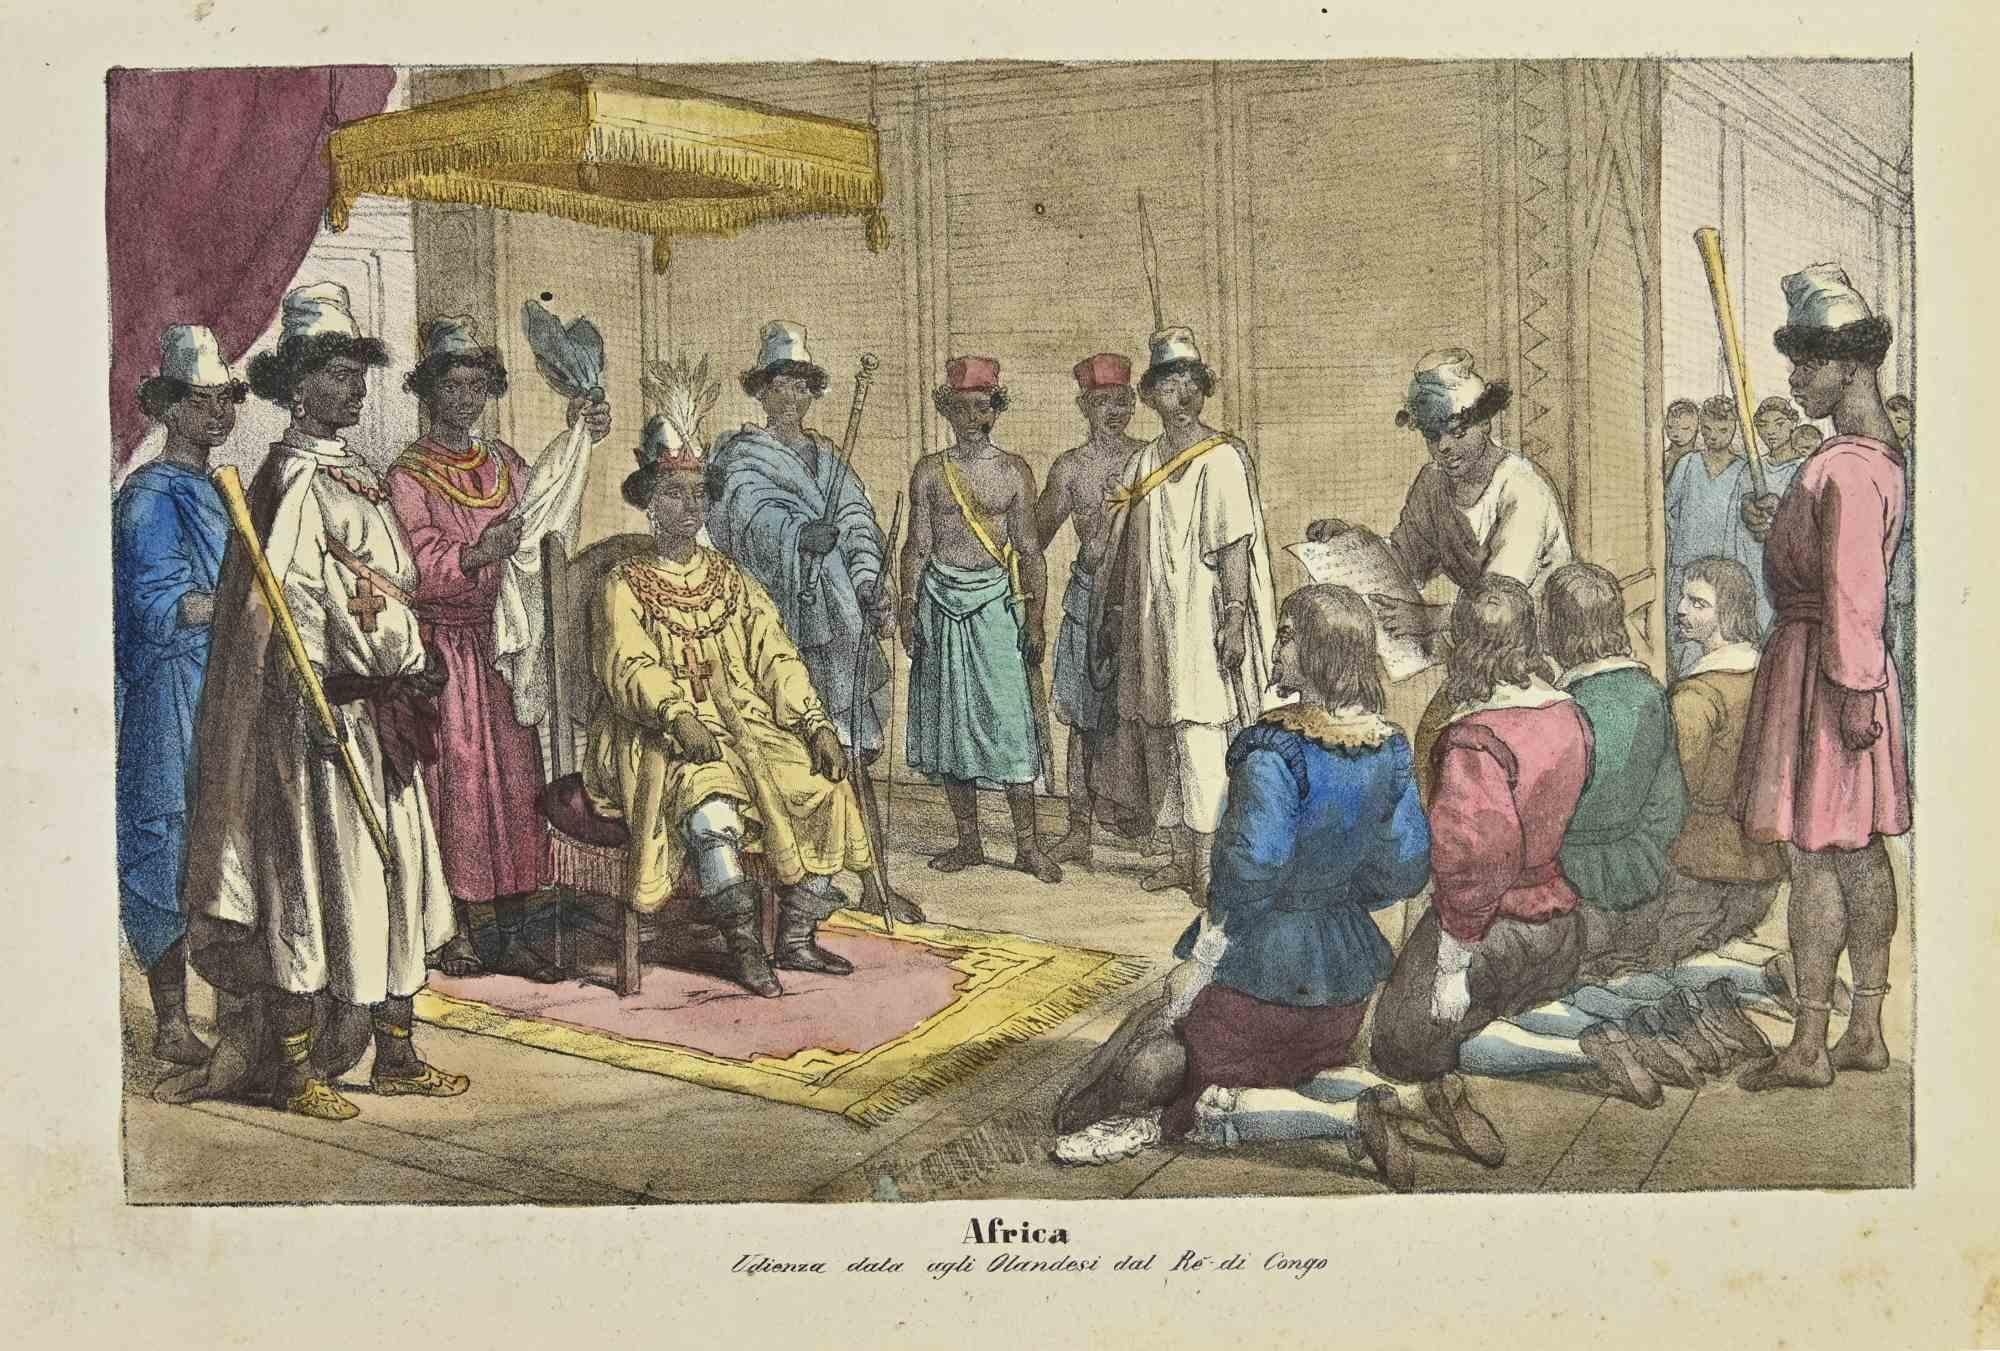 Ancient African Customs ist eine Lithographie von Auguste Wahlen aus dem Jahr 1844.

Handgefärbt.

Guter Zustand.

Im Zentrum des Kunstwerks steht der Originaltitel "Africa" und der Untertitel "Udienza data agli Olandesi dal Re di Congo" (übersetzt: